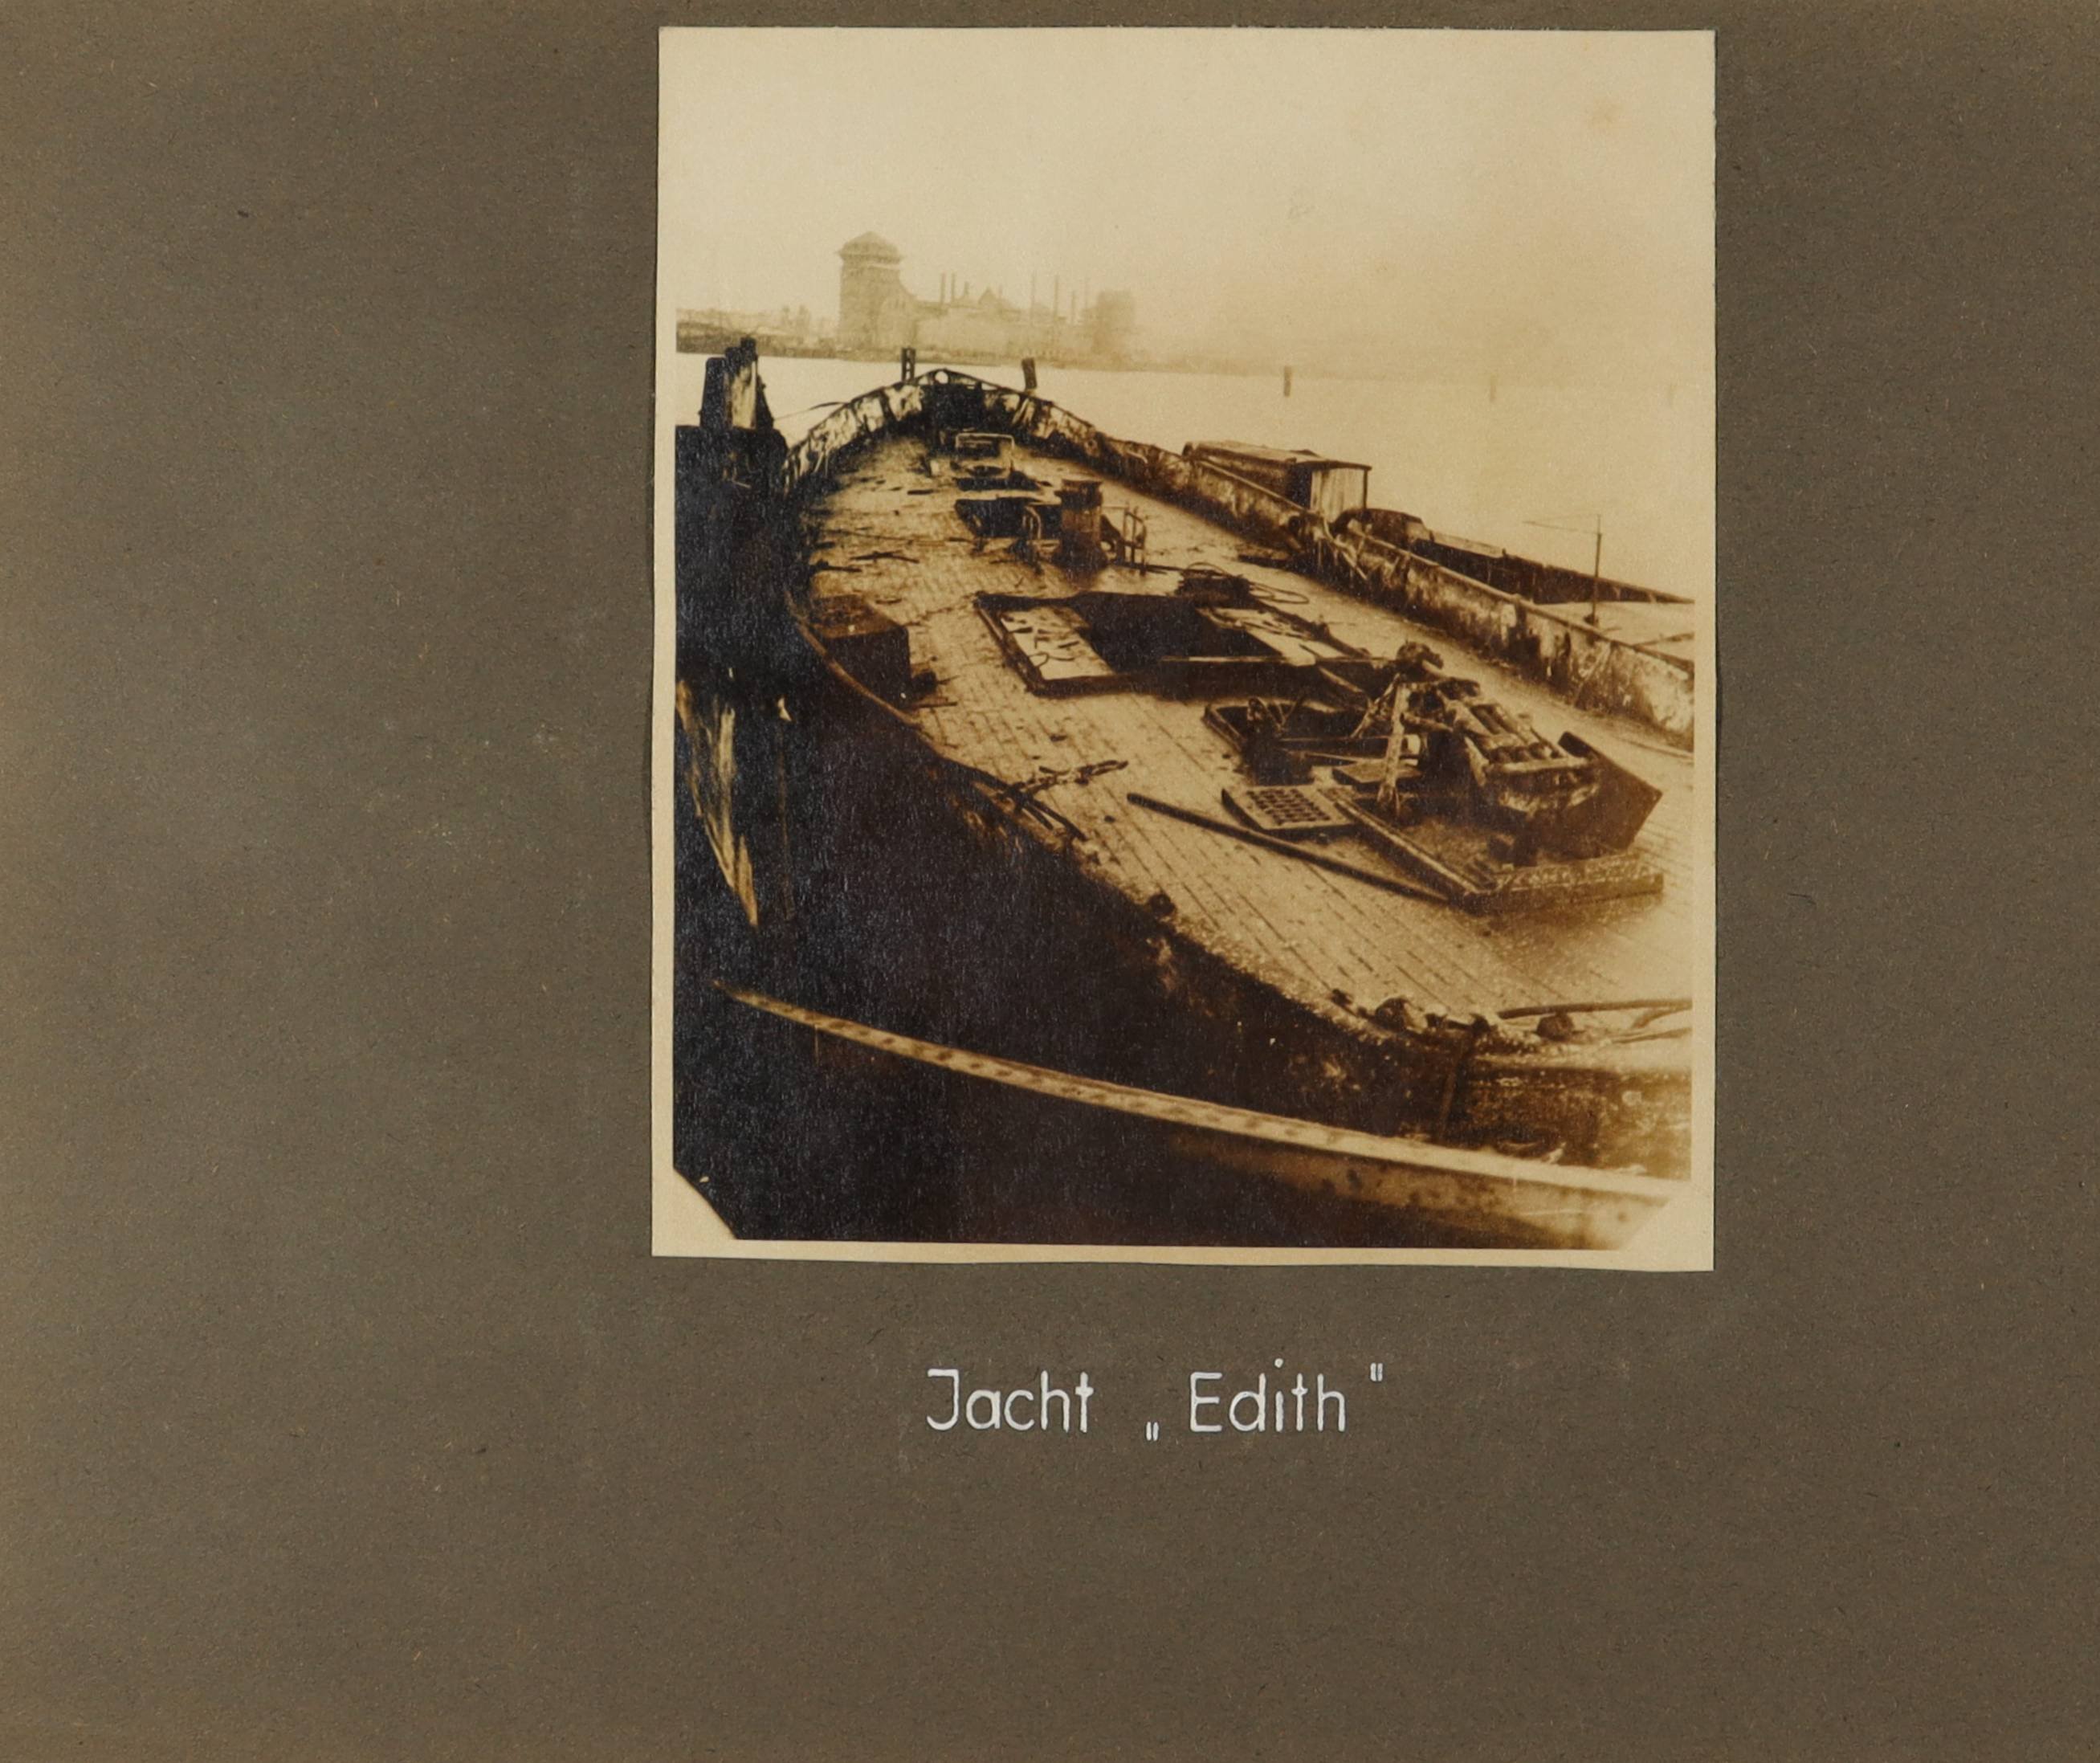 Decksansicht der Jacht "Edith" (Schiffbau- und Schiffahrtsmuseum Rostock RR-F)